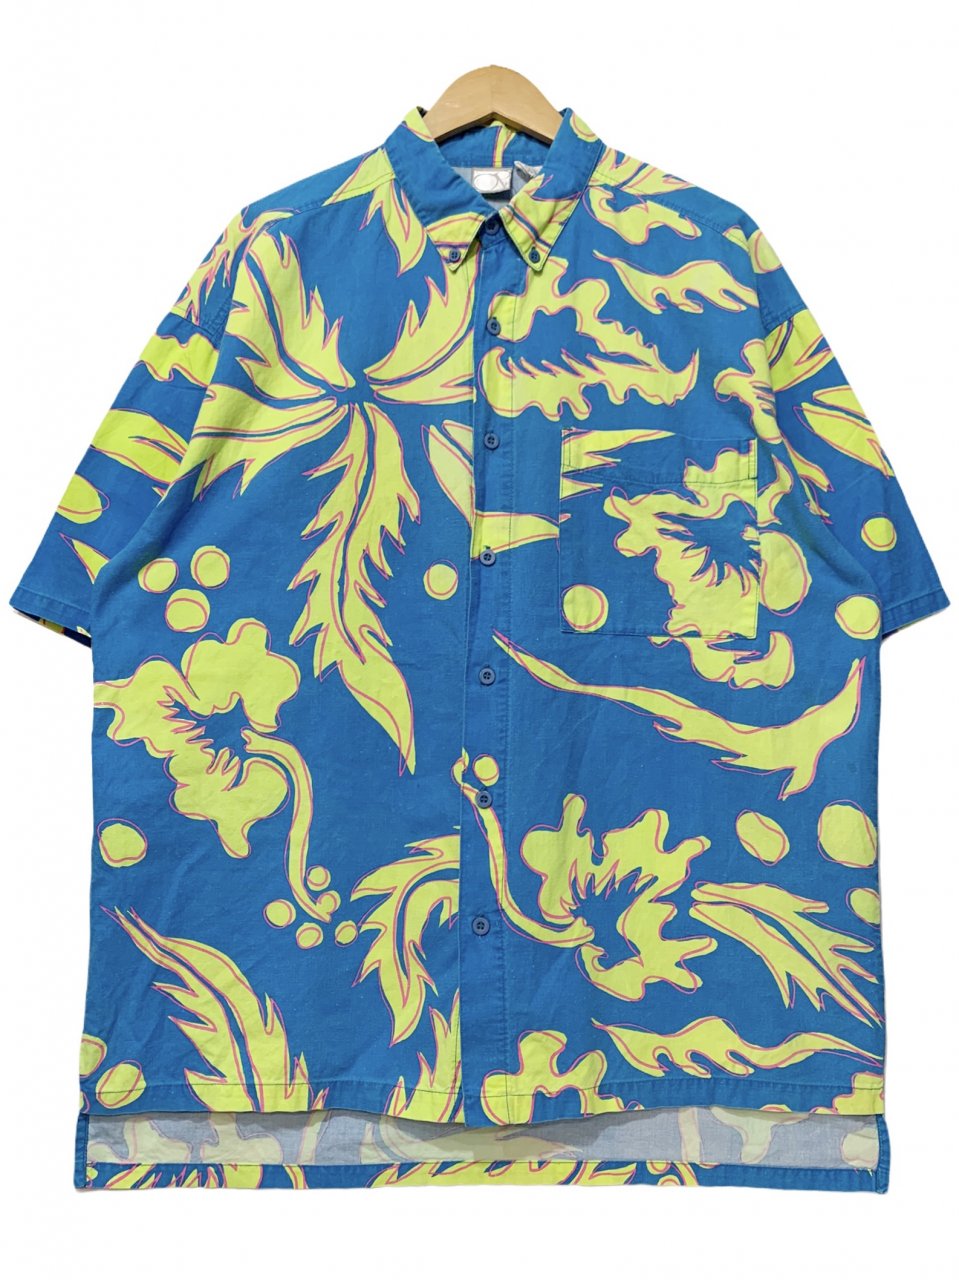 90s OCEAN PACIFIC Cotton Aloha Shirt 青 L オーシャンパシフィック 